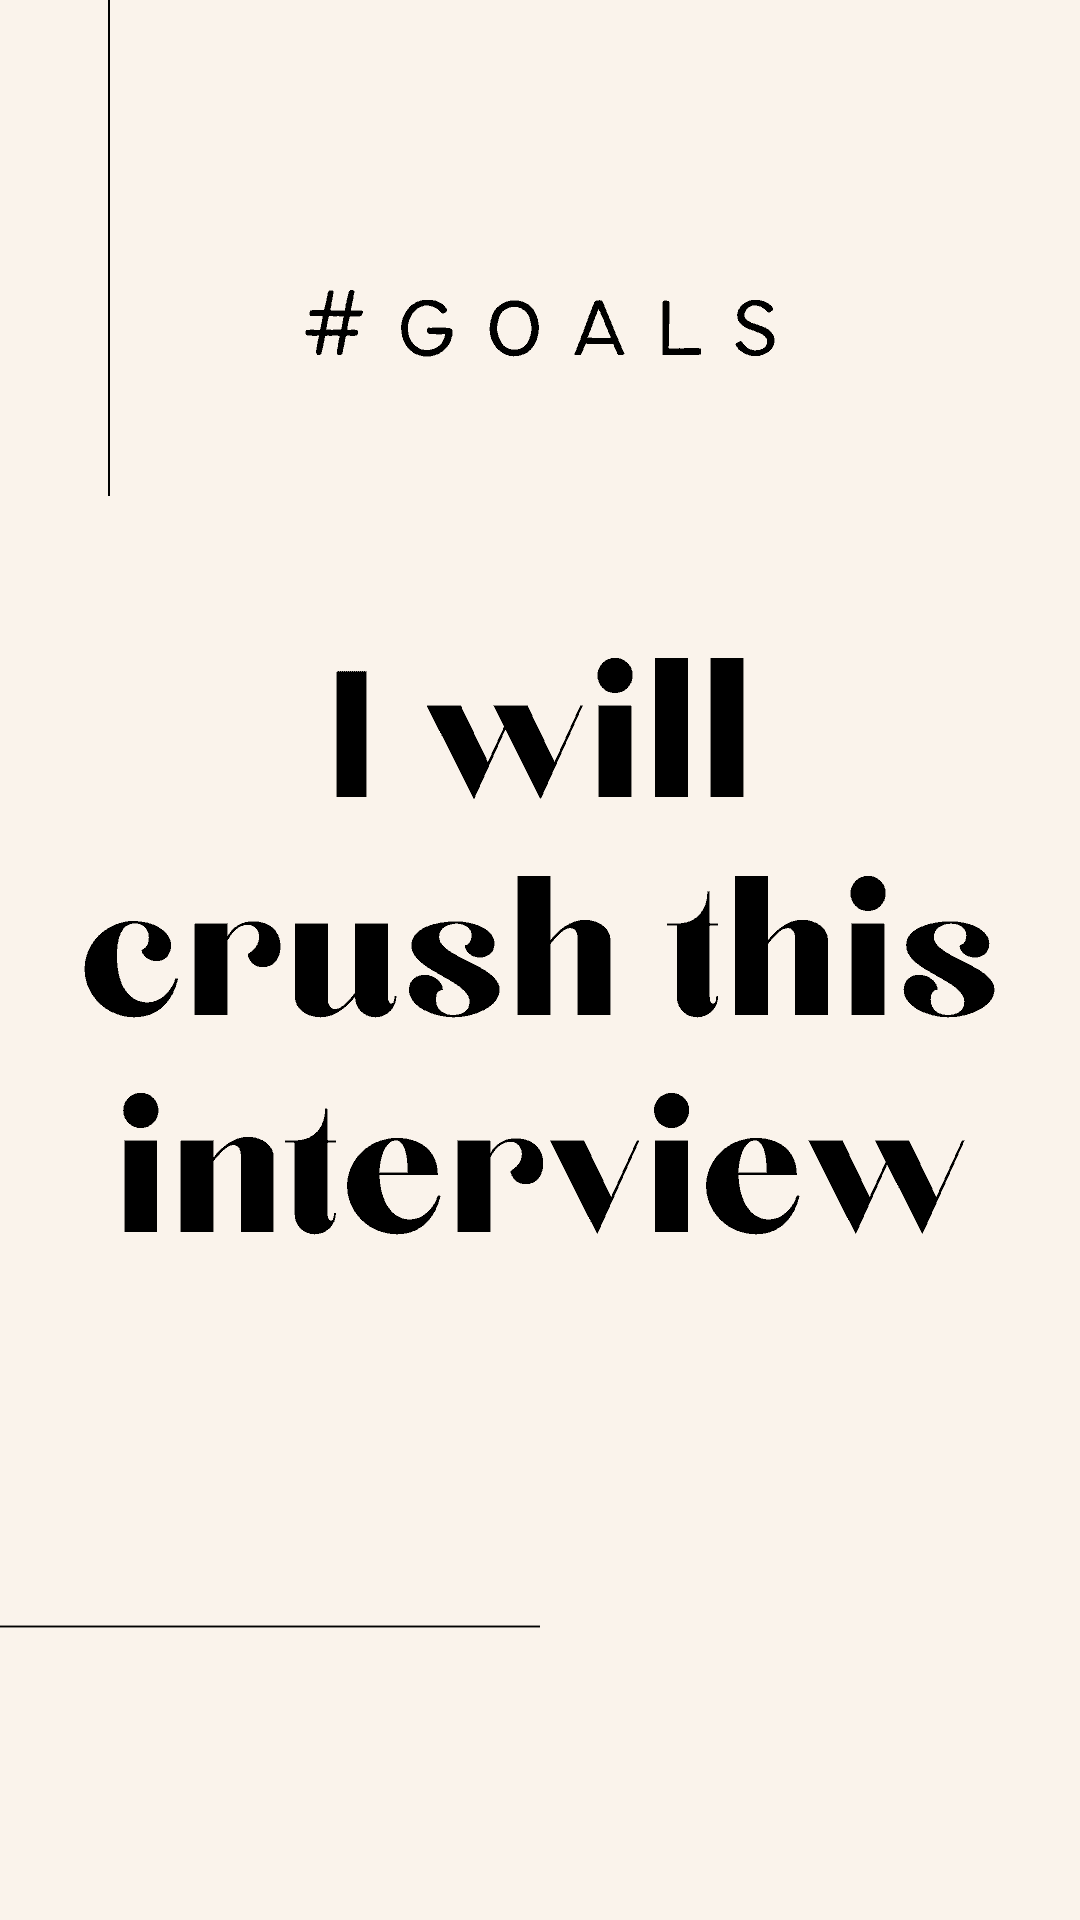 motivational wallpaper for job interview success 2